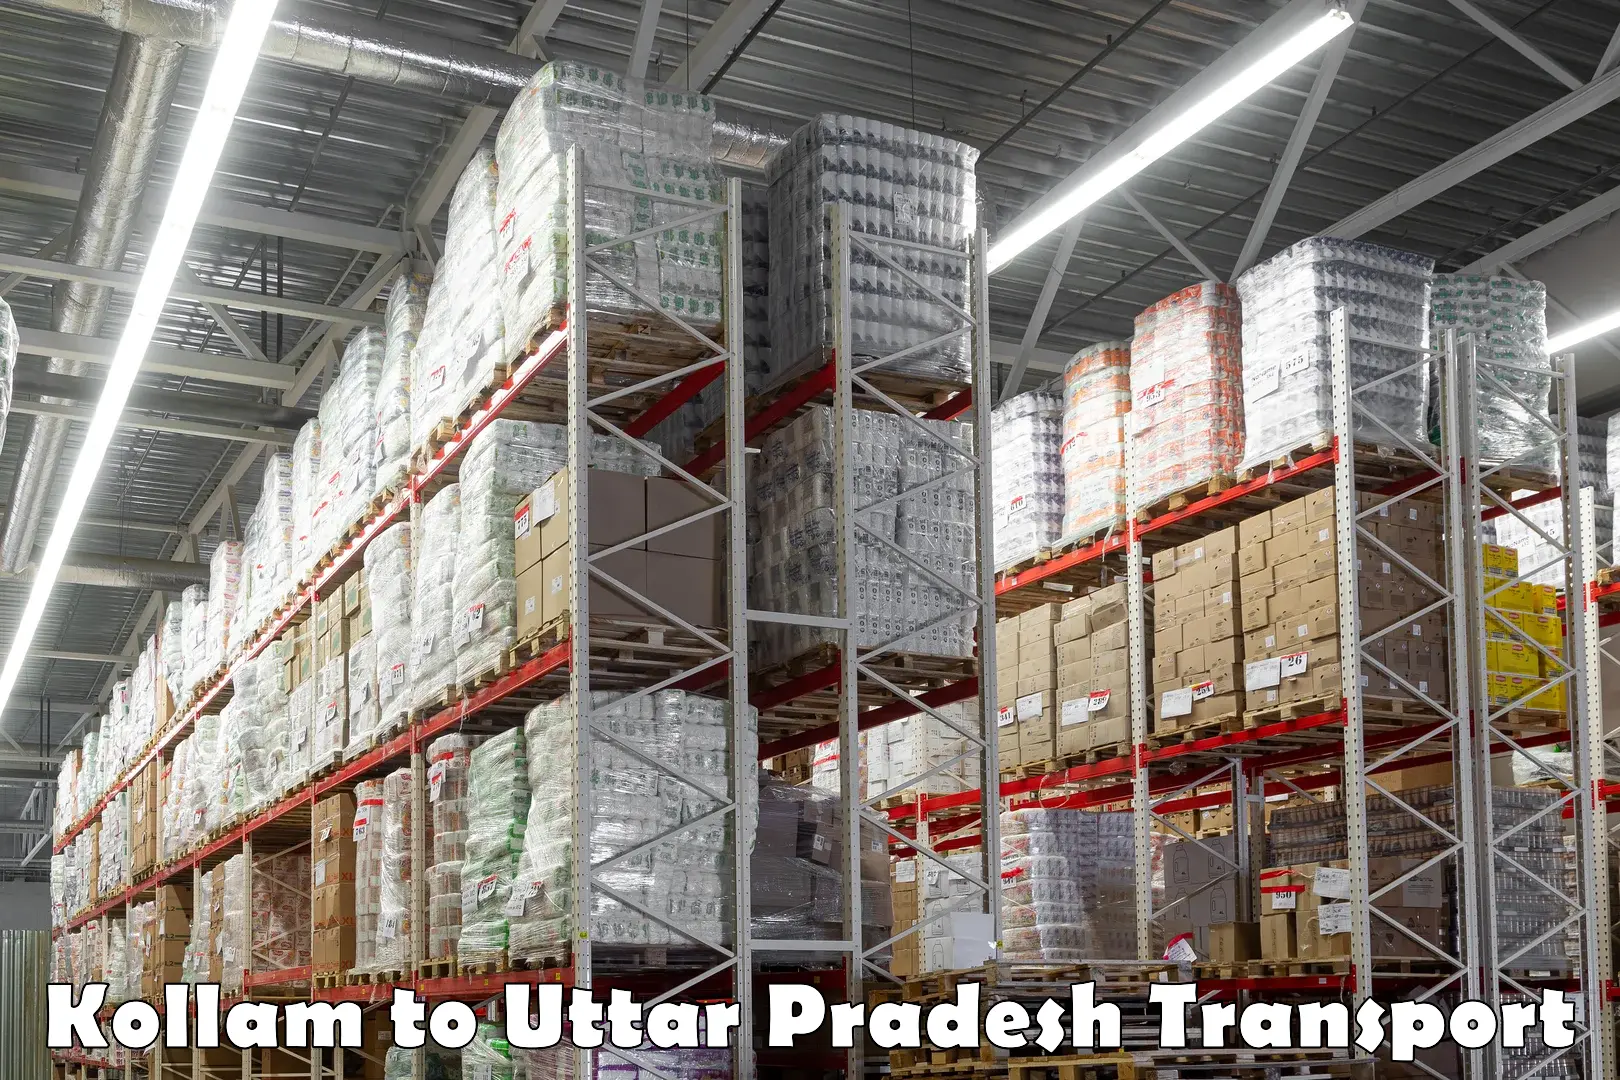 Interstate transport services Kollam to Uttar Pradesh